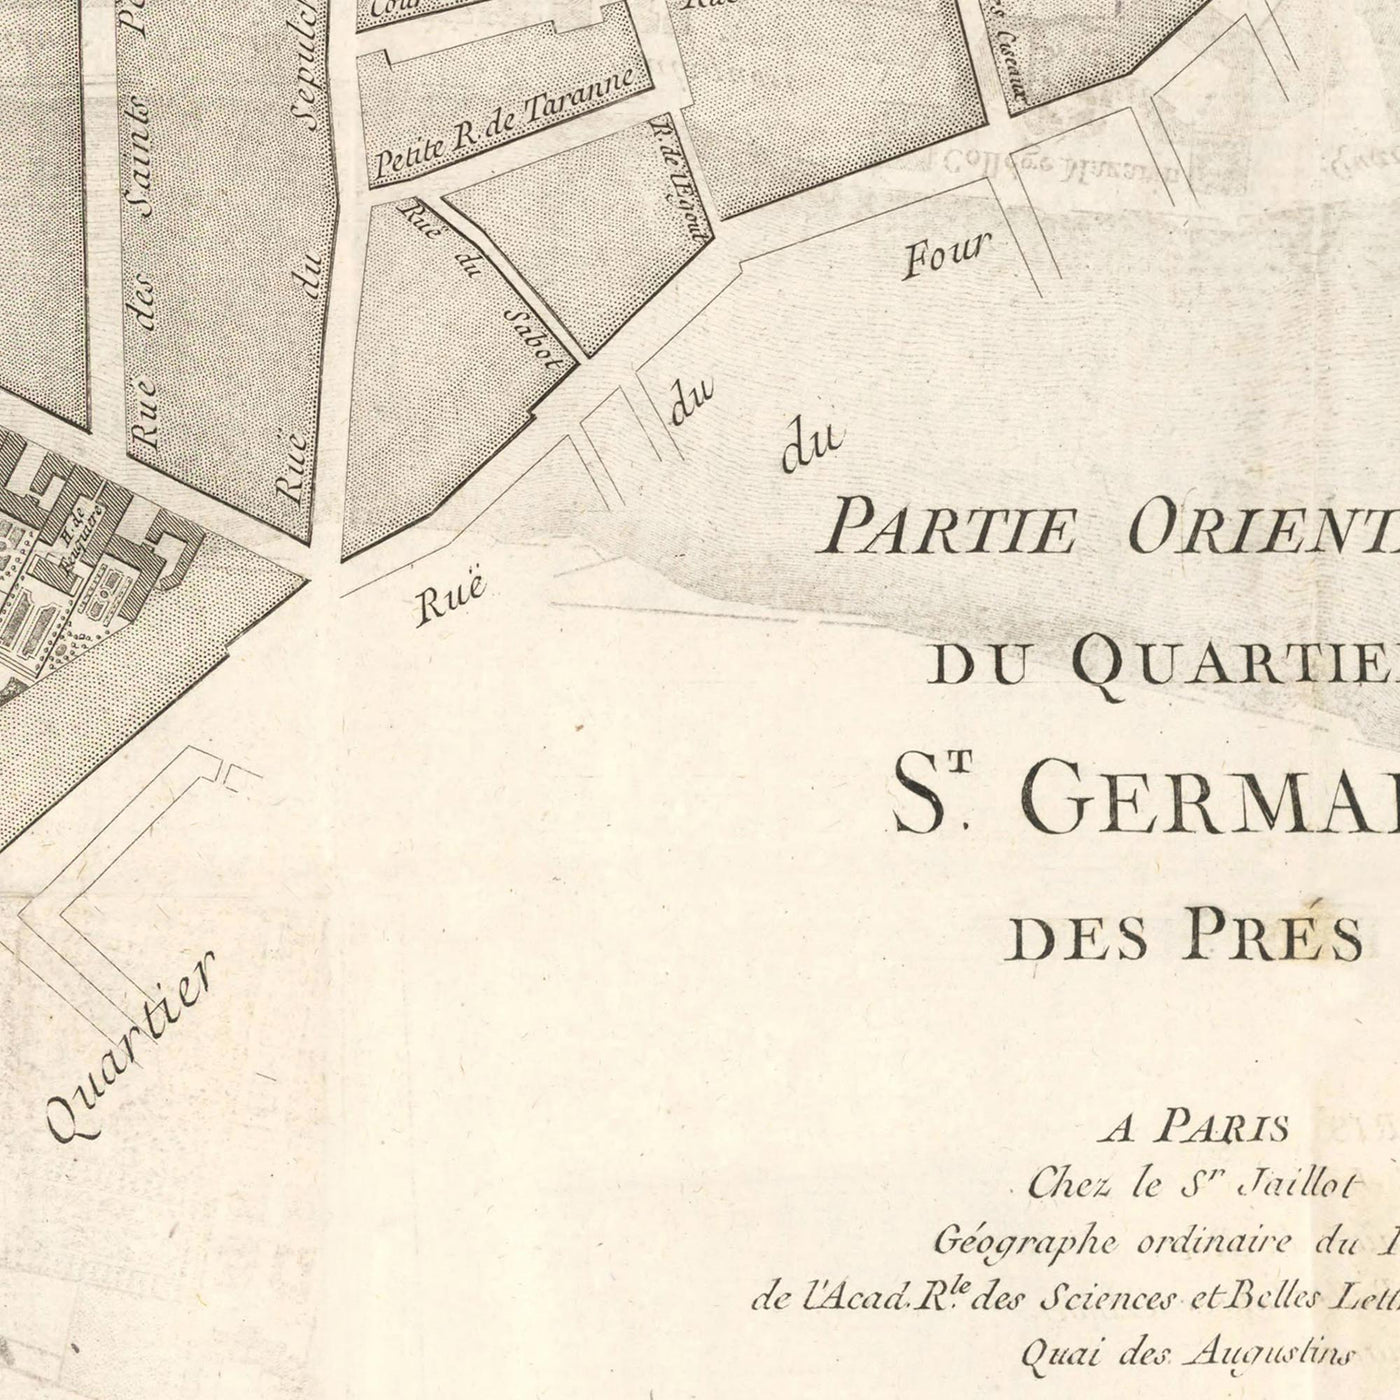 Old Map of St Germain (Paris) by Jean Baptise Michel Jaillot in 1775 - Seine, Point Royal, Palais Bourbon, Rue Du Bac, Caserne des Gardes